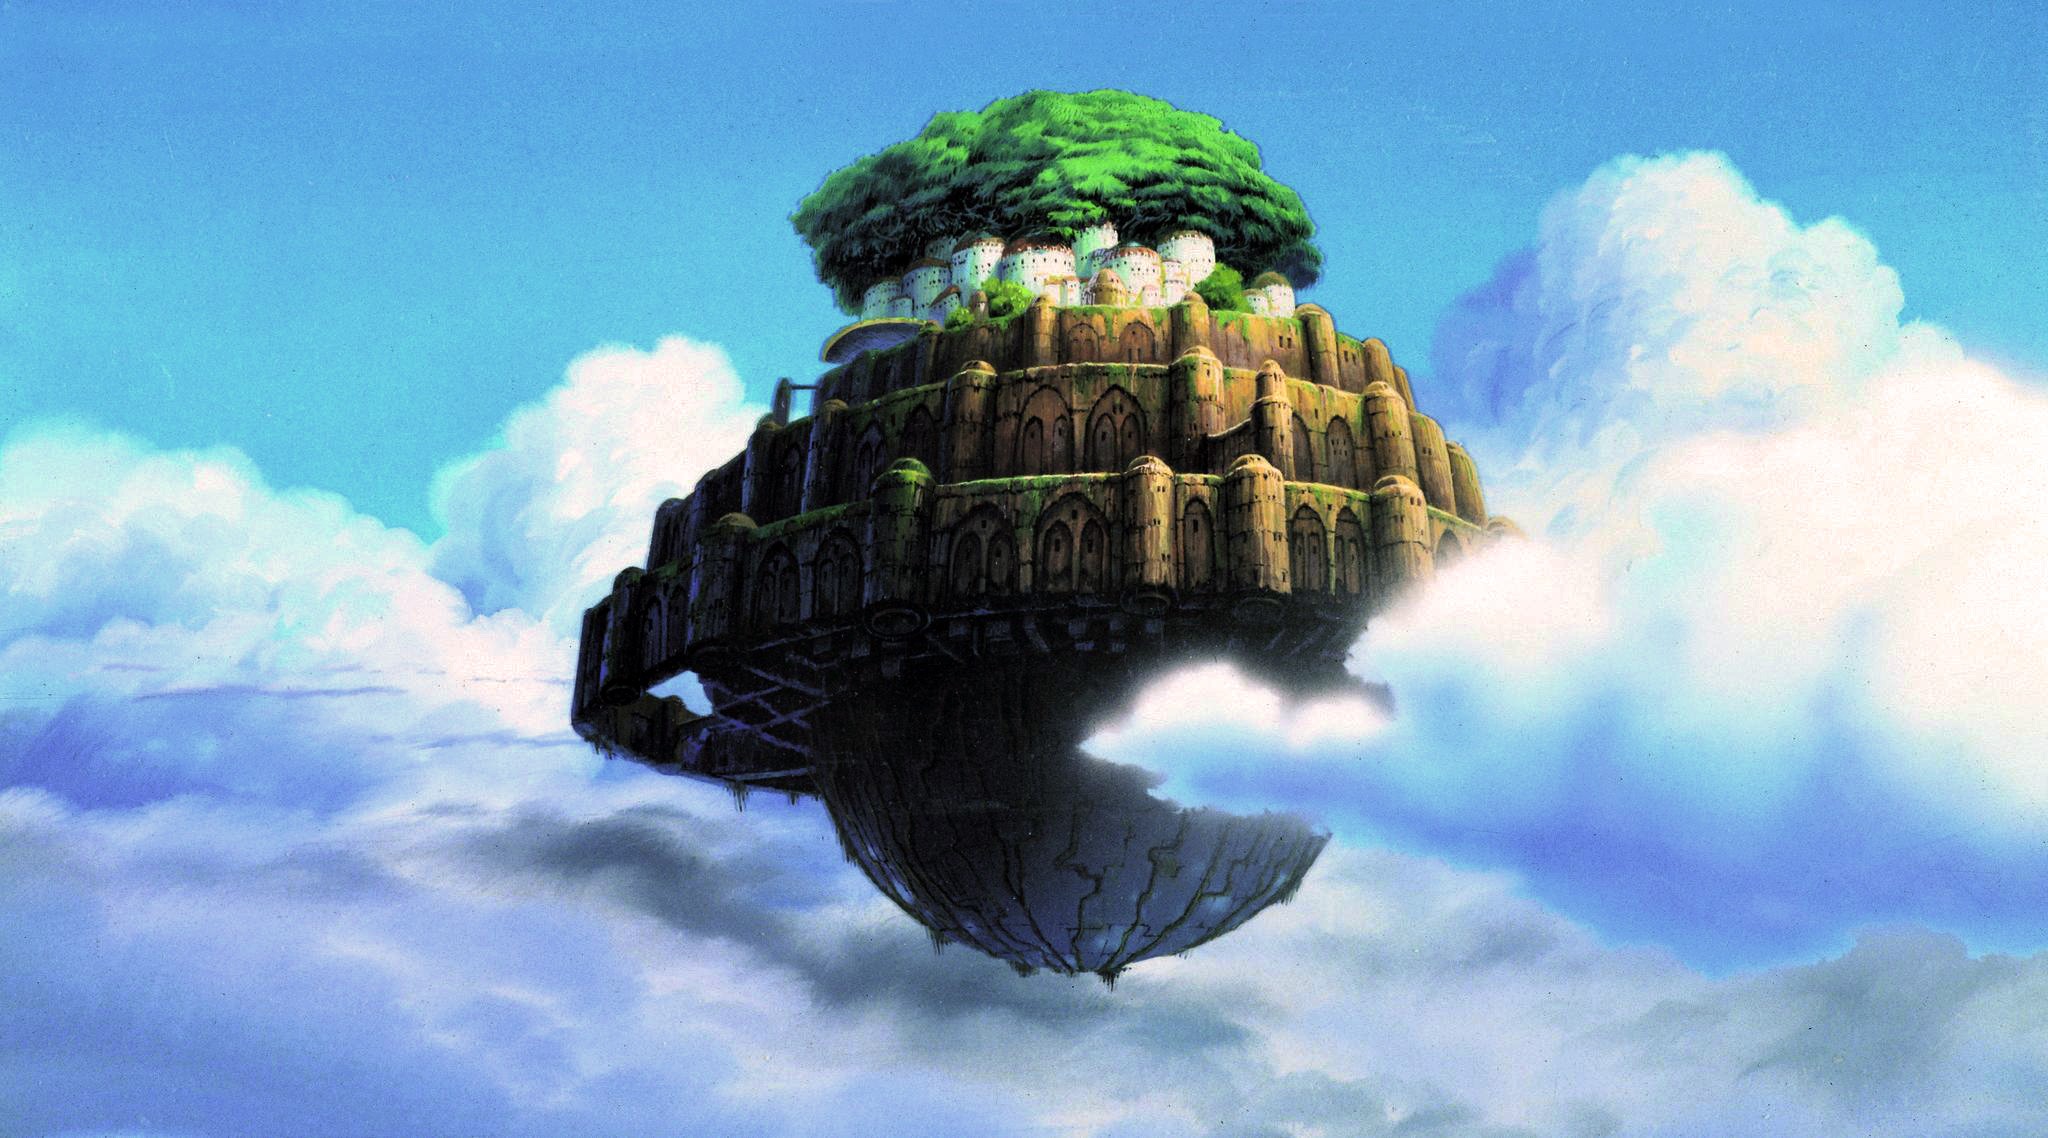 General 2048x1138 Hayao Miyazaki Castle in the Sky anime Laputa: Castle in the Sky castle sky clouds fantasy art